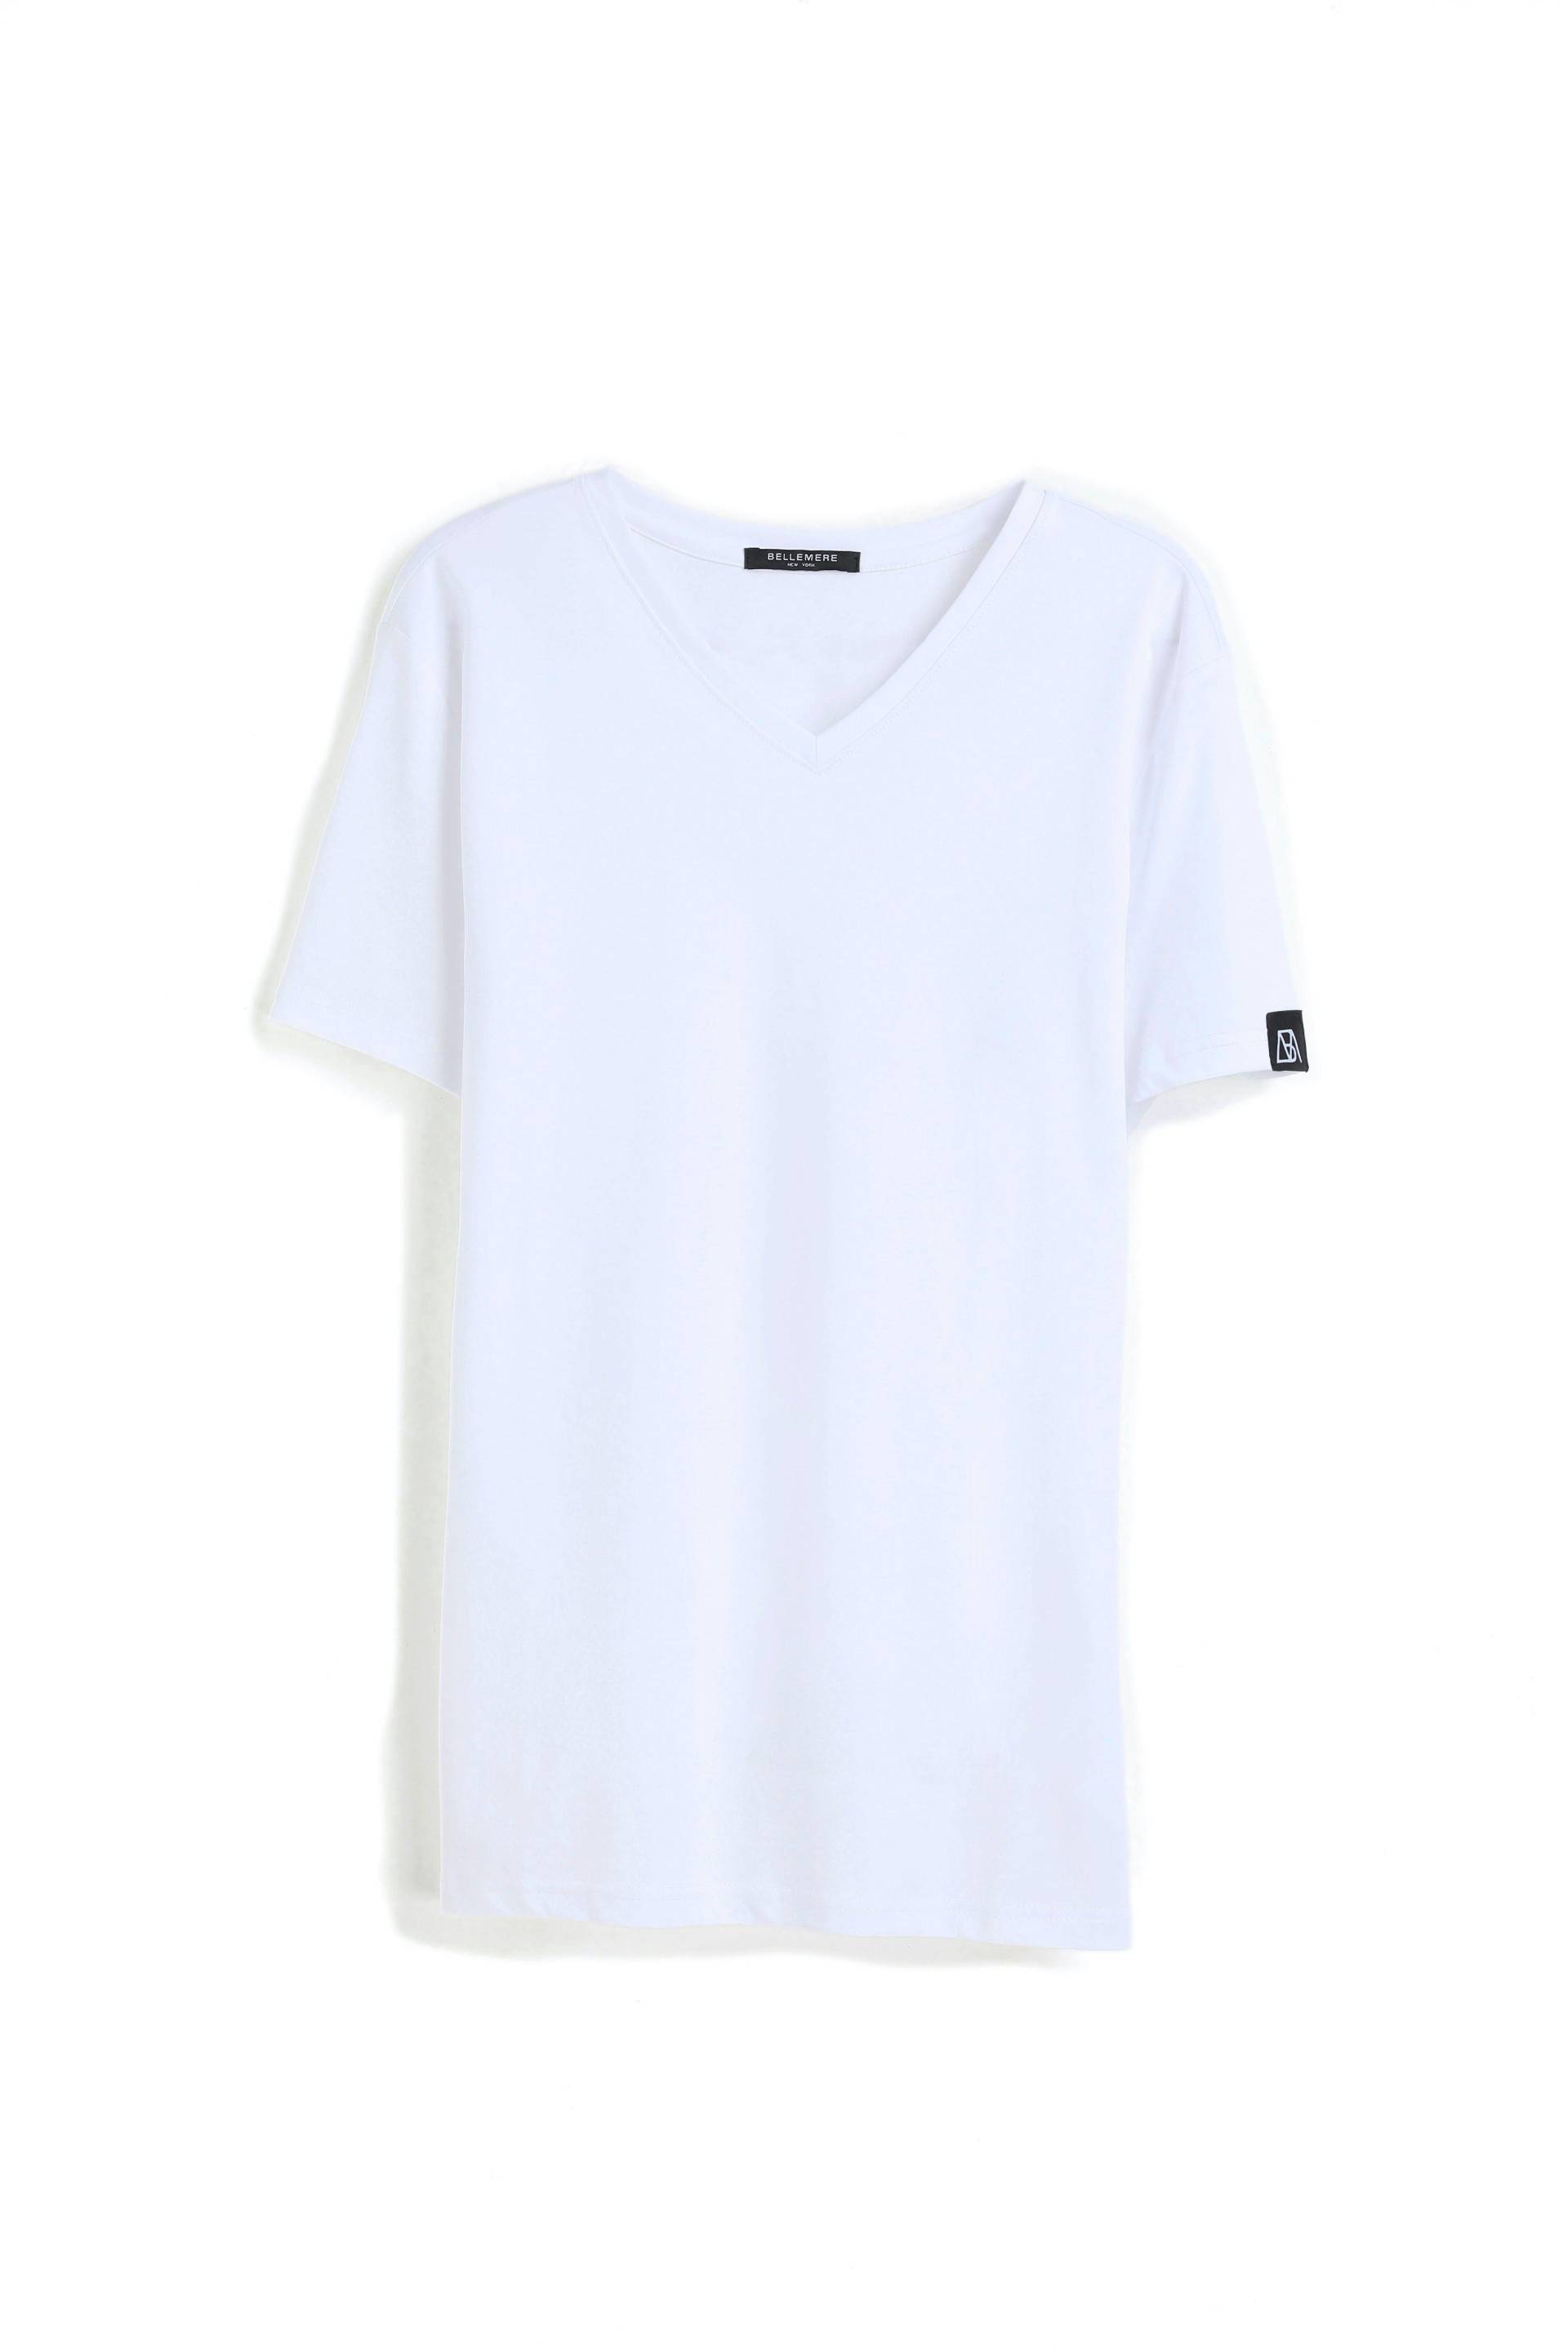 Grandioses T-shirt Aus Merzerisierter Baumwolle Mit V-ausschnitt Herren Weiss S von Bellemere New York